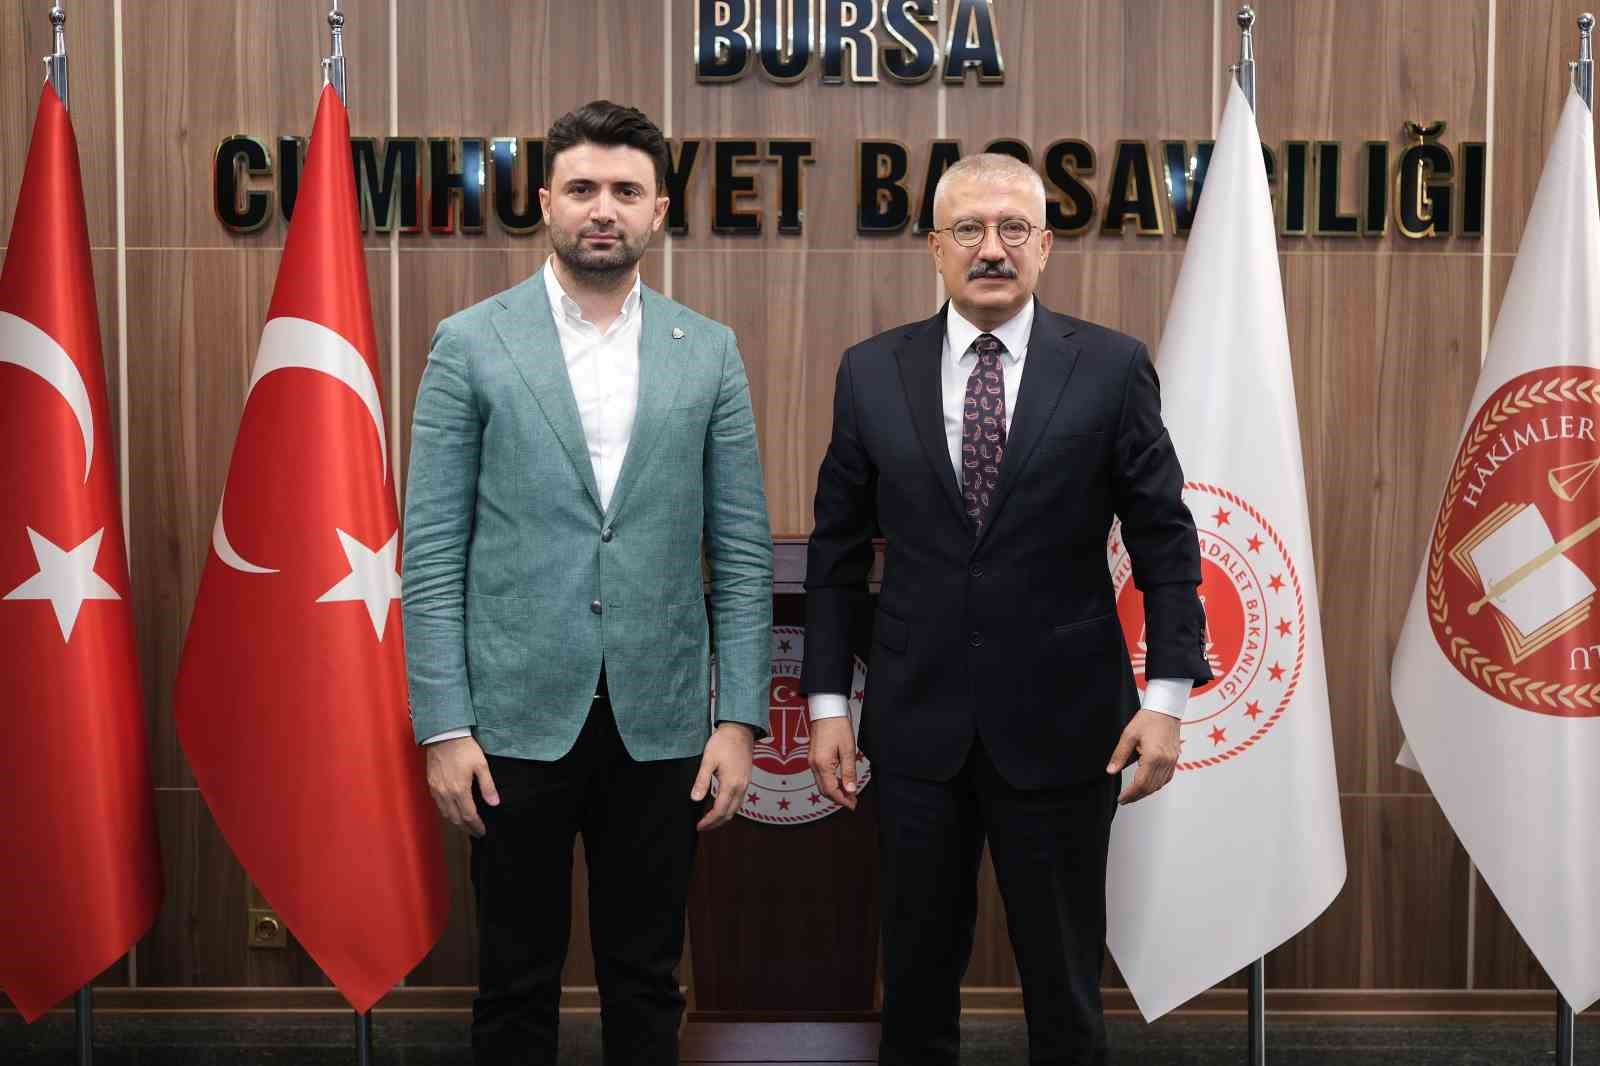 Bursaspor Yönetimi Bursa Cumhuriyet Başsavcısı Ramazan Solmazı Ziyaret Etti